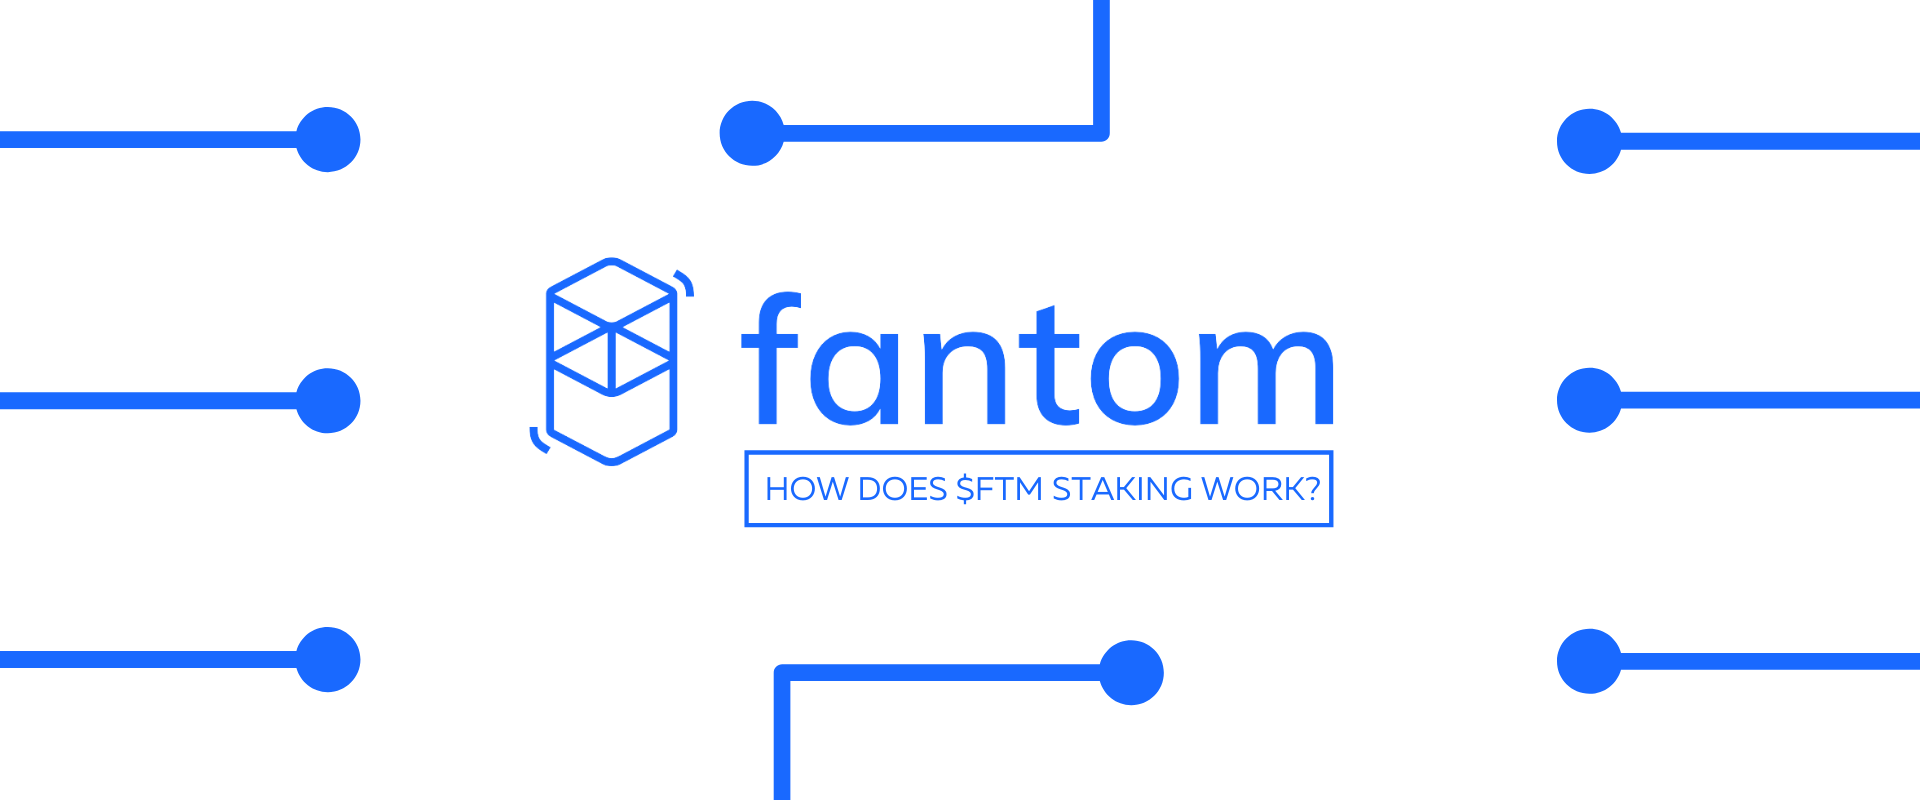 How Fantaom (FTM) staking works banner.